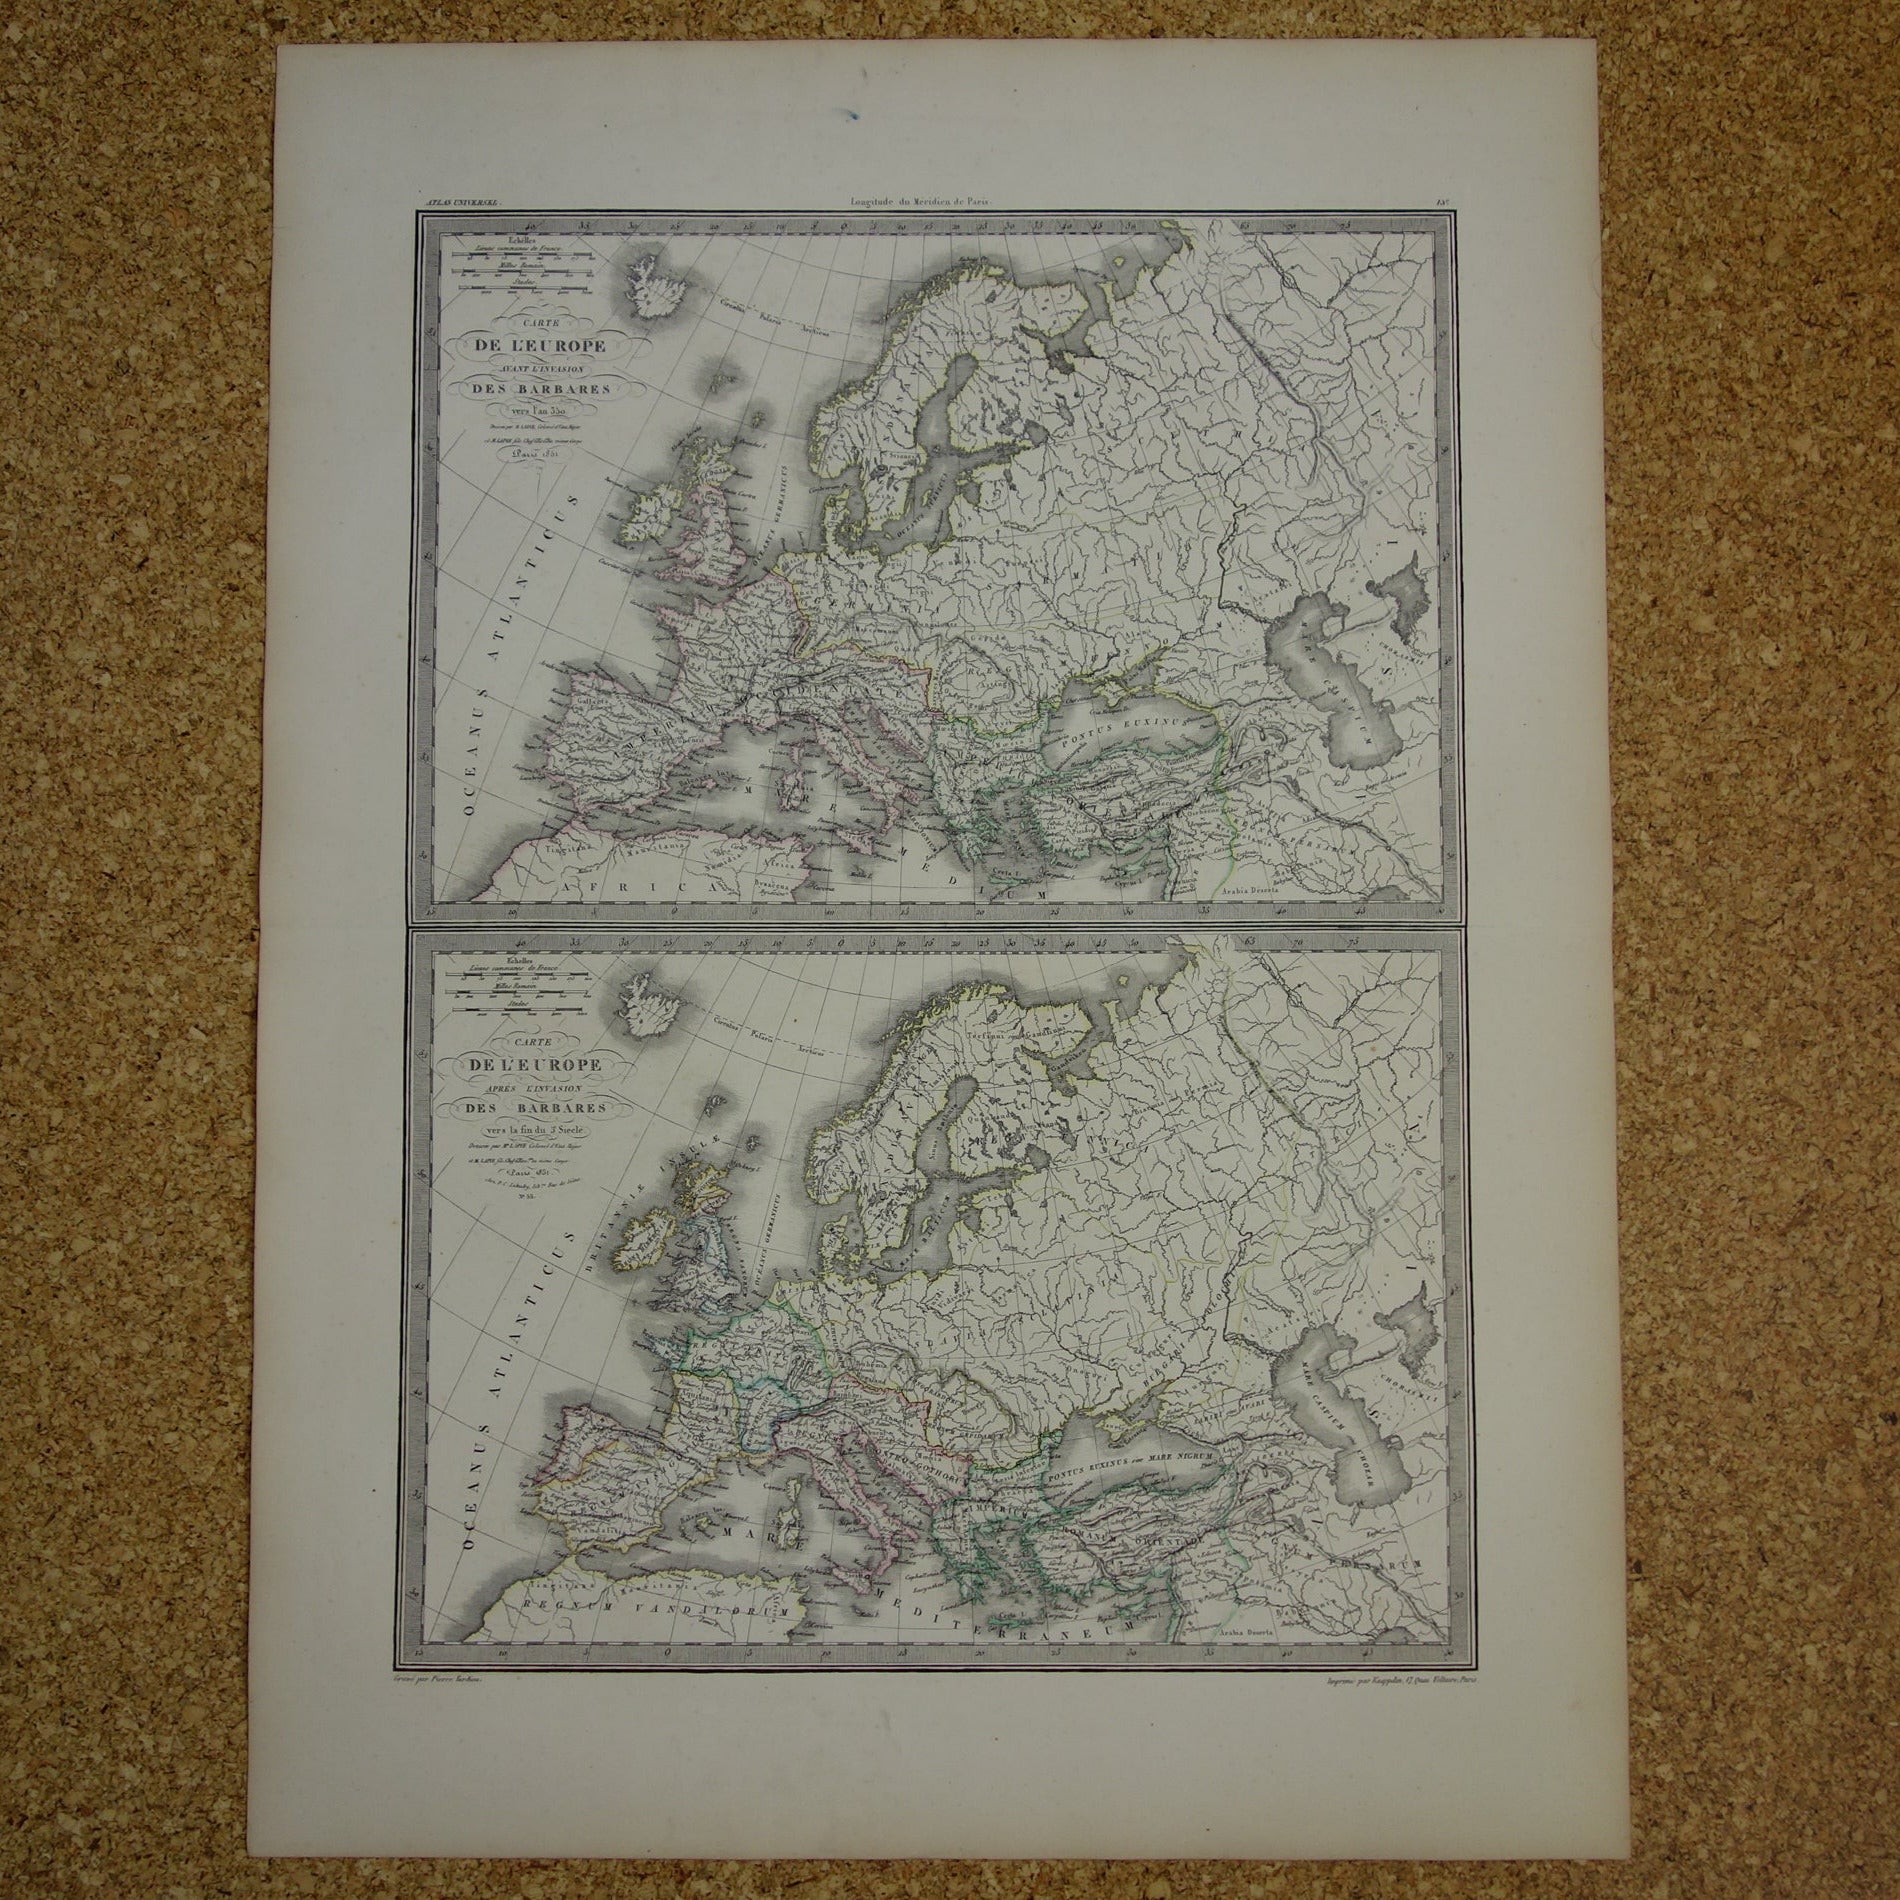 carte de l'europe avant l'invasion des barbares lapie 1851